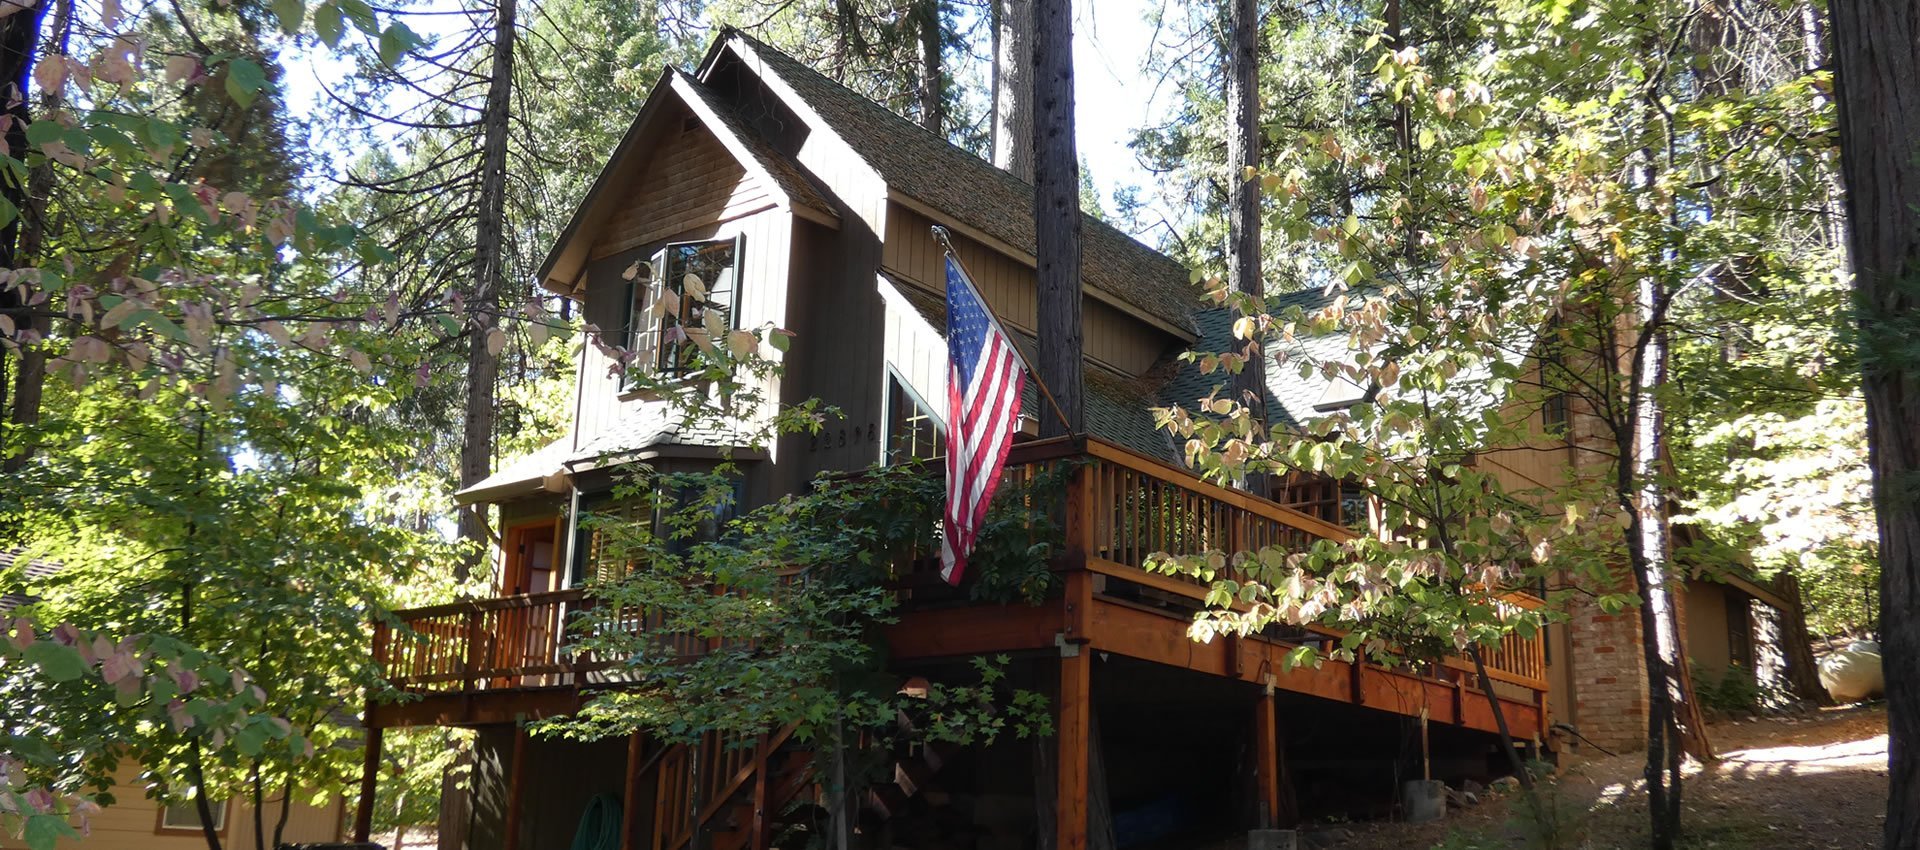 Twain Harte CA Vacation Cabin Rentals Deer Haus